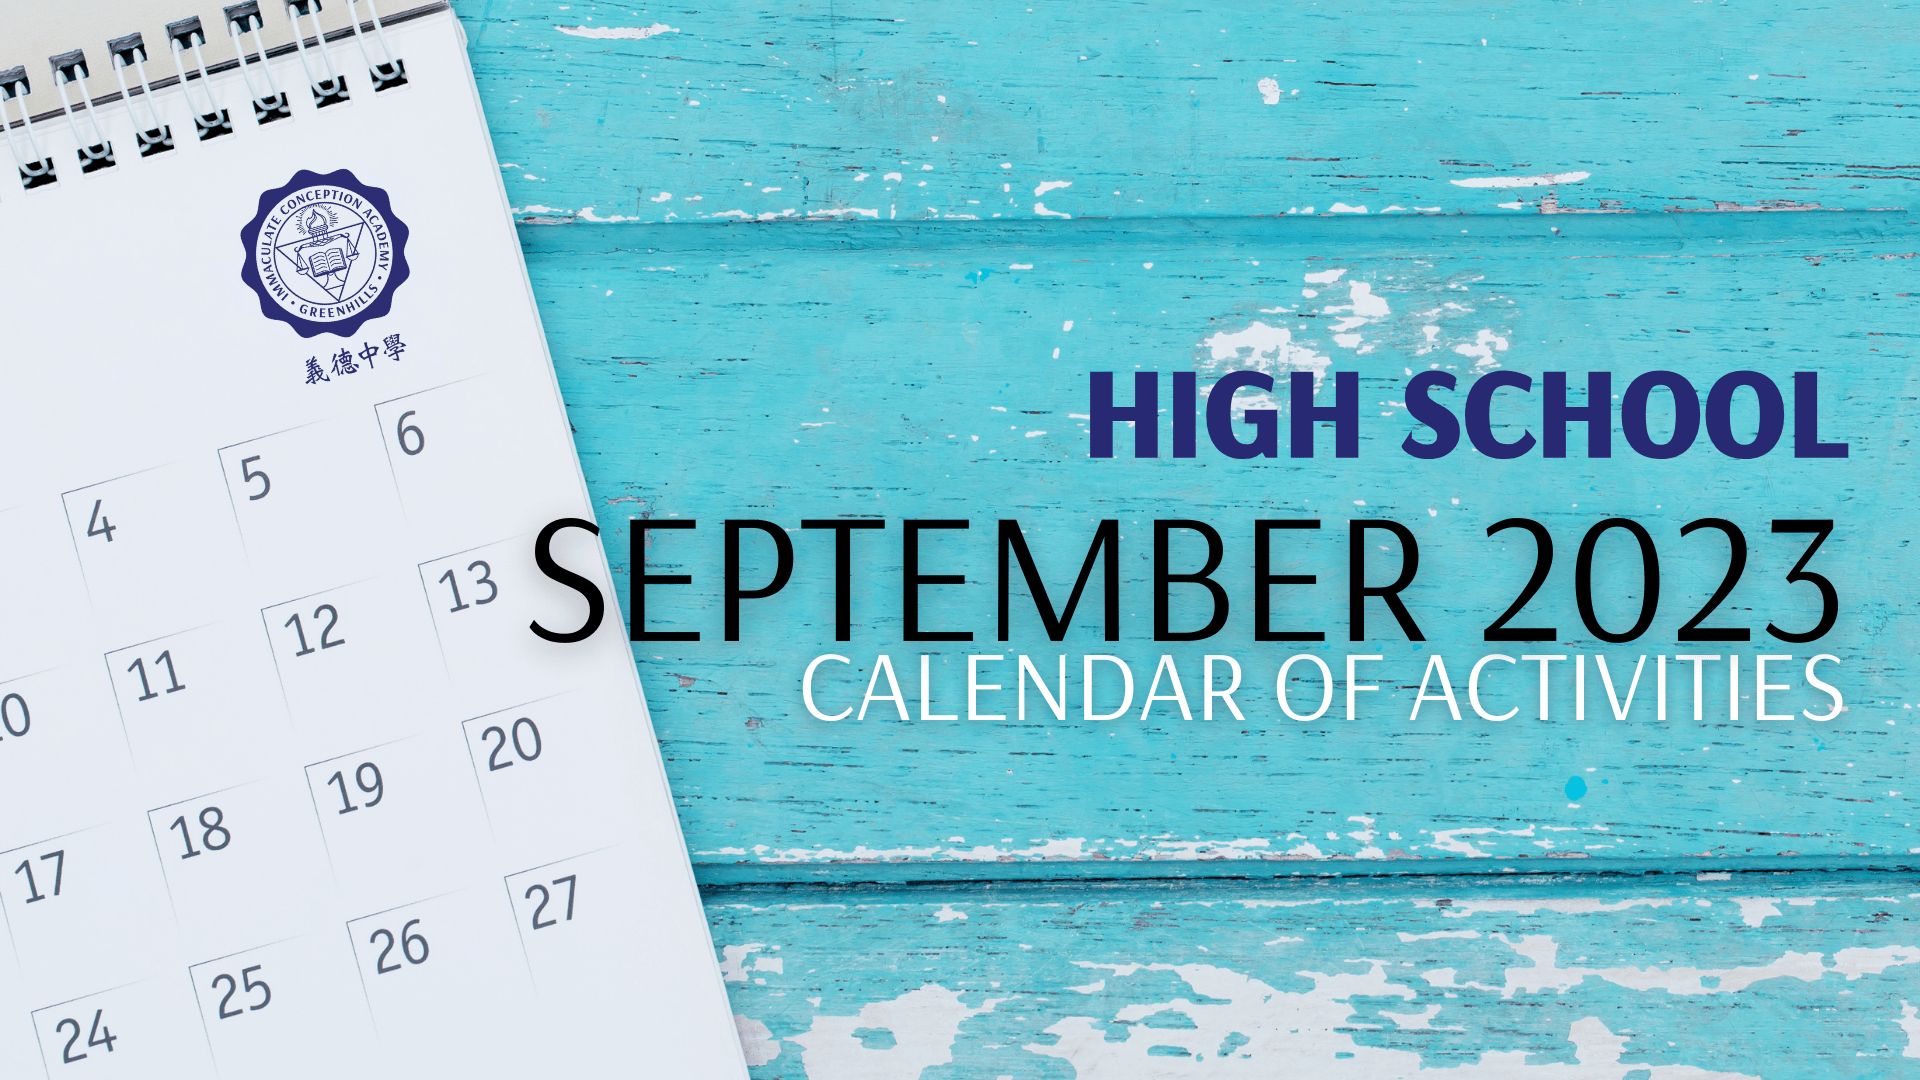 High School Calendar of Activities for September 2023